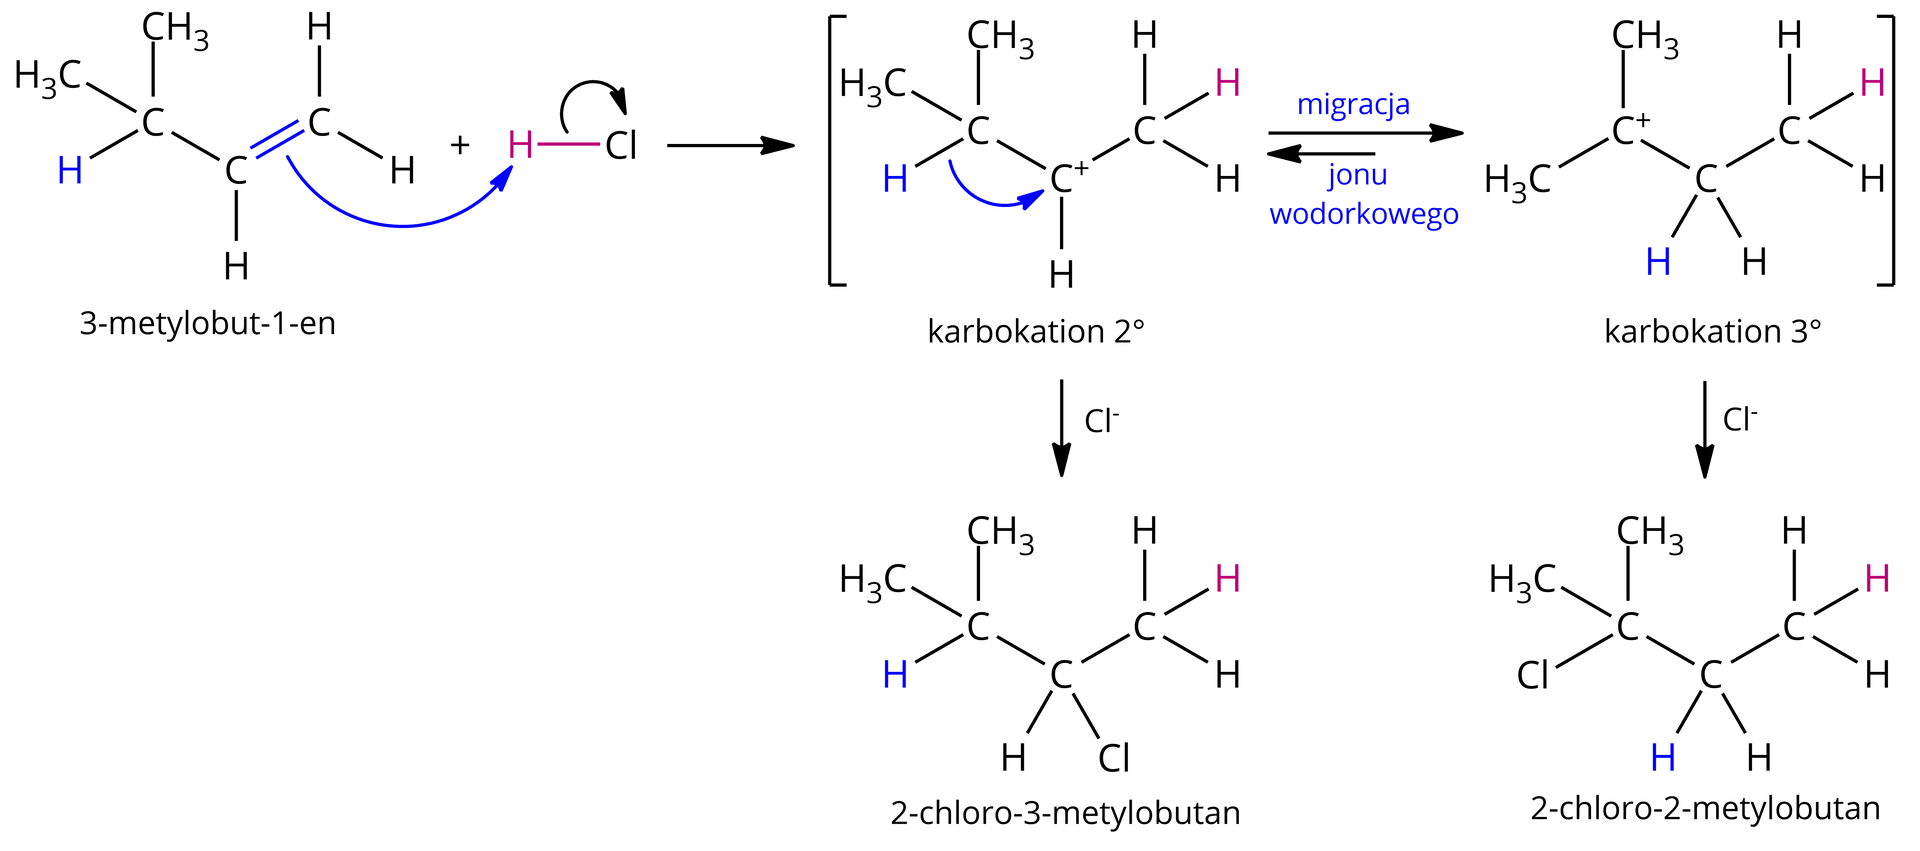 Na ilustracji jest mechanizm reakcji 3‑metylobut‑1-enu z chlorowodorem HCl. Cząsteczka 3‑metylobut‑1-enu o strukturze, dwa węgle połączone wiązaniem podwójnym, od pierwszego odchodzą dwa wiązania łączące go z atomami wodoru, od drugiego jeden atom wodoru oraz grupa CH połączona z dwiema grupami CH3, dodać cząsteczka chlorowodoru H wiązanie Cl, symbolizująca atak pary elektronowej, czyli ruch elektronów, łukowata strzałka poprowadzona od wiązania podwójnego do atomu wodoru w cząsteczce chlorowodoru, z jednoczesnym zerwaniem wiązania pomiędzy atomem wodoru i chloru, co symbolizuje łukowata strzałka poprowadzona od wspólnej pary elektronowej atomu wodoru i chloru do atomu chloru, odejście anionu chlorkowego. Strzałka. W nawiasach kwadratowych, symbolizujących stan przejściowy, struktury dwóch karbokationów. Pierwszy z nich, karbokation drugorzędowy, o strukturze grupa CH3 połączona z grupą CH o cząstkowym ładunku dodatnim, oznaczonym plusem, która to połączona jest z grupą CH zawiązaną z dwoma grupami CH3. Od pary elektronowej łączącej atom wodoru H z atomem węgla obojętnej grupy CH poprowadzona jest łukowata strzałka do centrum karbokationu, co symbolizuje migrację jonu wodorkowego do grupy CH z cząstkowym ładunkiem dodatnim. Dłuższa strzałka w prawo, krótsza w lewo, co symbolizuje przesunięcie równowagi na korzyść drugiego, nowoutworzonego karbokationu trzeciorzędowego, o strukturze grupa CH3 związana z grupą CH2, która to łączy się z węglem obdarzonym cząstkowym ładunkiem dodatnim i związanym z dwoma grupami CH3. Strzałka od pierwszego, drugorzędowego karbokationu, nad nią anion chlorkowy, Cl minus. Powstaje 2‑chloro‑3-metylobutan o strukturze grupa CH3 połączona z grupą CH, która to połączona jest z atomem chloru oraz kolejną grupą CH, która to z kolei połączona jest z dwoma grupami CH3. Strzałka od drugiego trzeciorzędowego karbokationu, nad nią anion chlorkowy, Cl minus. Powstaje 2‑chloro‑2-metylobutan o strukturze grupa CH3 połączona z grupą CH2, która to połączona jest atomem węgla, od którego odchodzą dwie grupy CH3 oraz atom chloru.